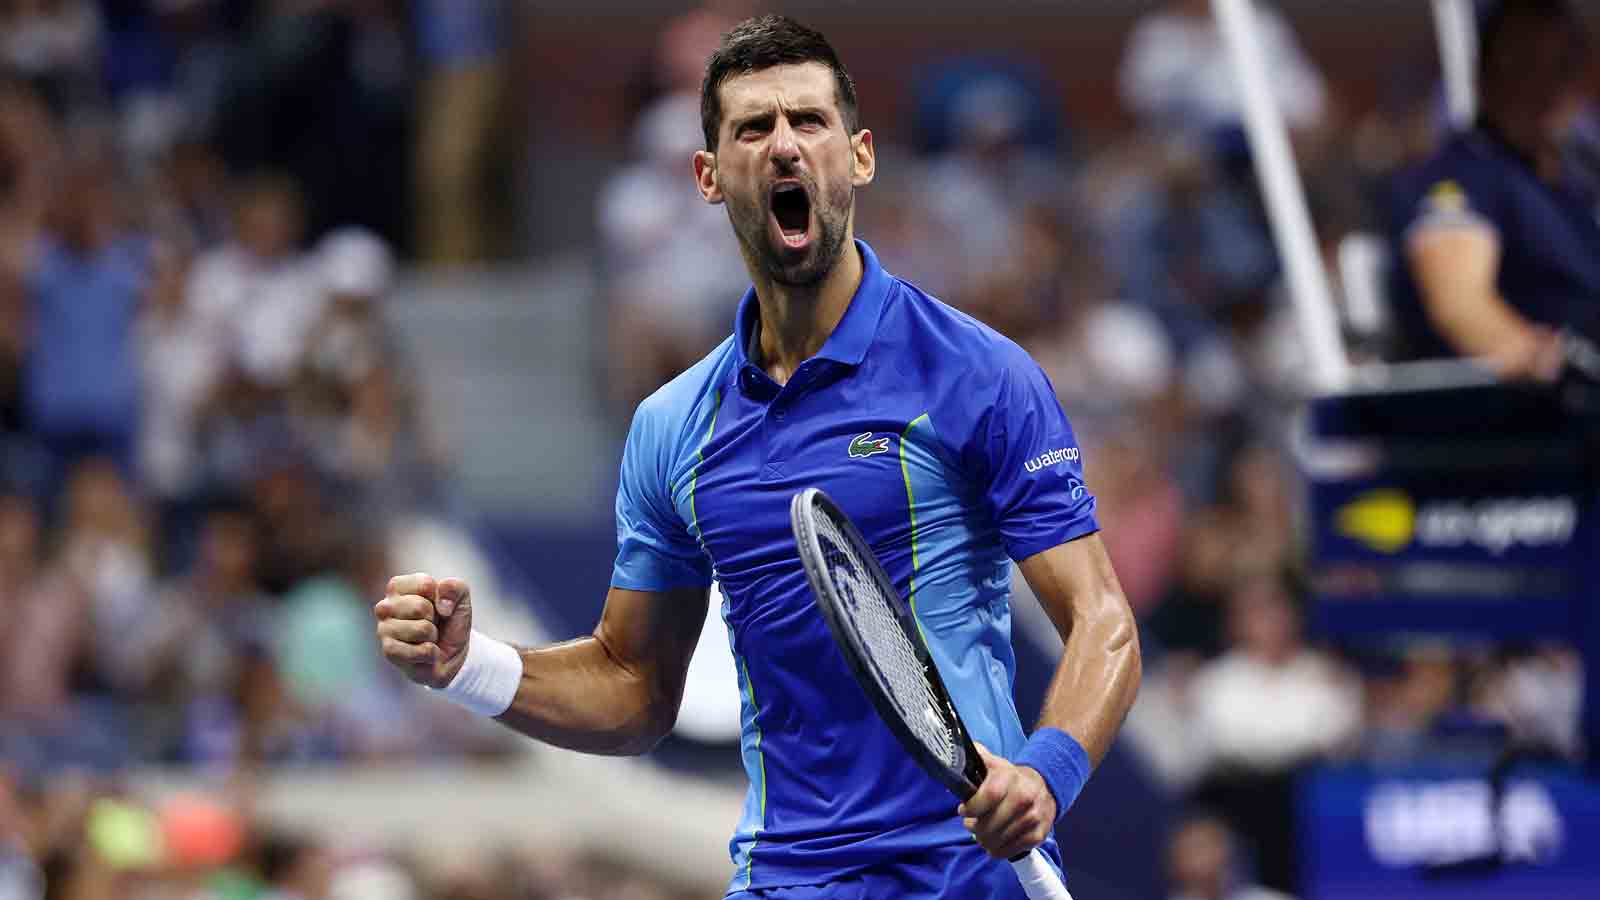 Novak Djokovic vs Daniil Medvedev, US Open 2023 men's tennis final